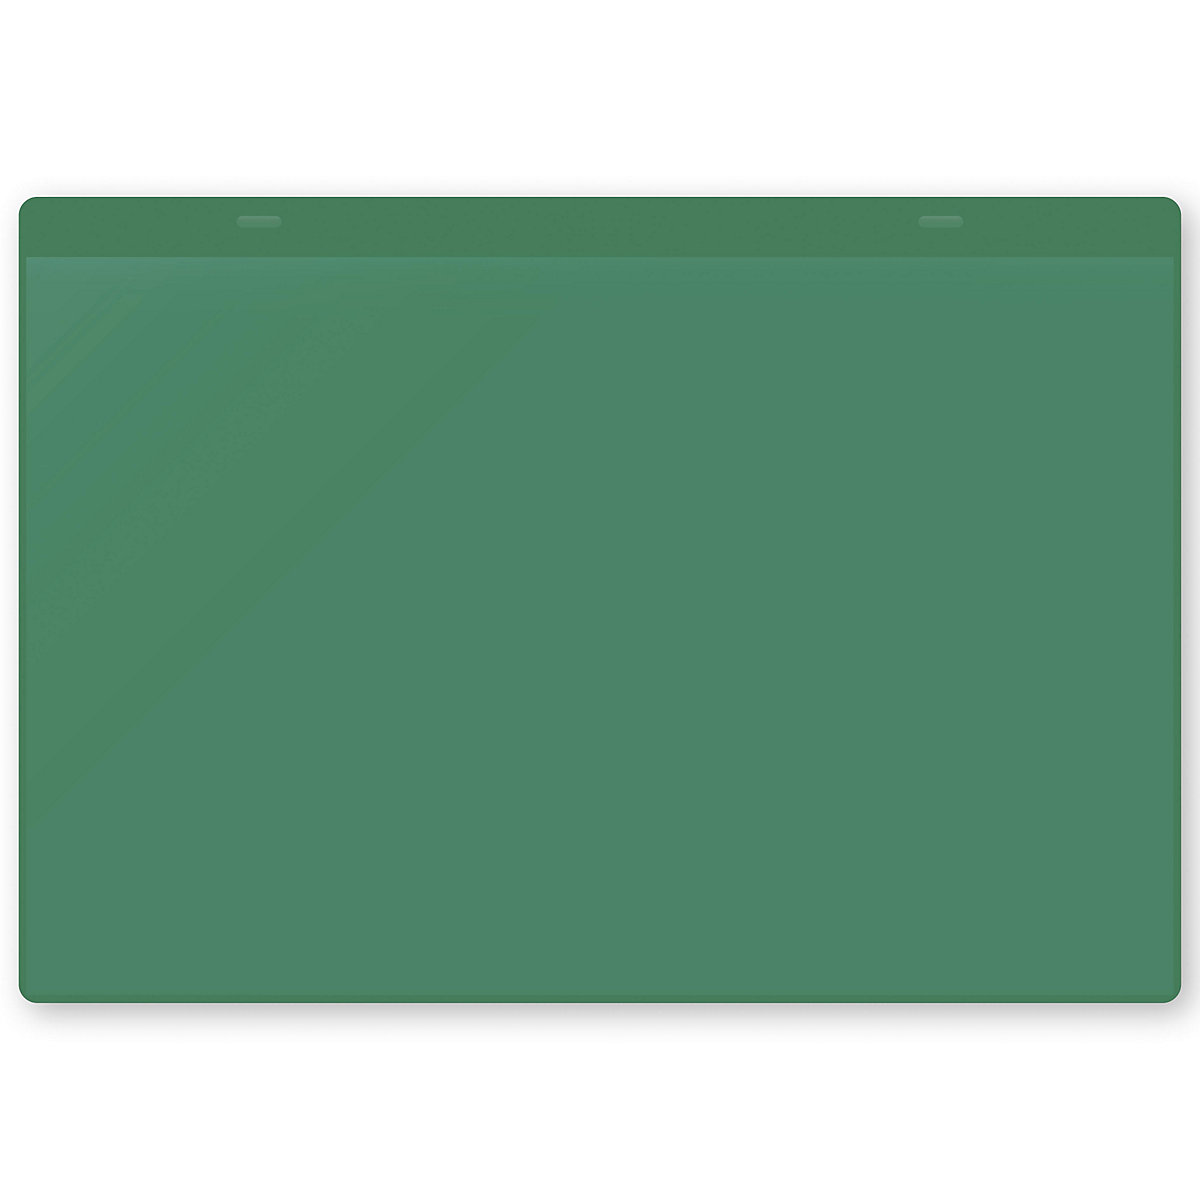 Dokumentumtartó tasakok akasztópánttal, DIN A4, fekvő, cs. e. 50 db, zöld